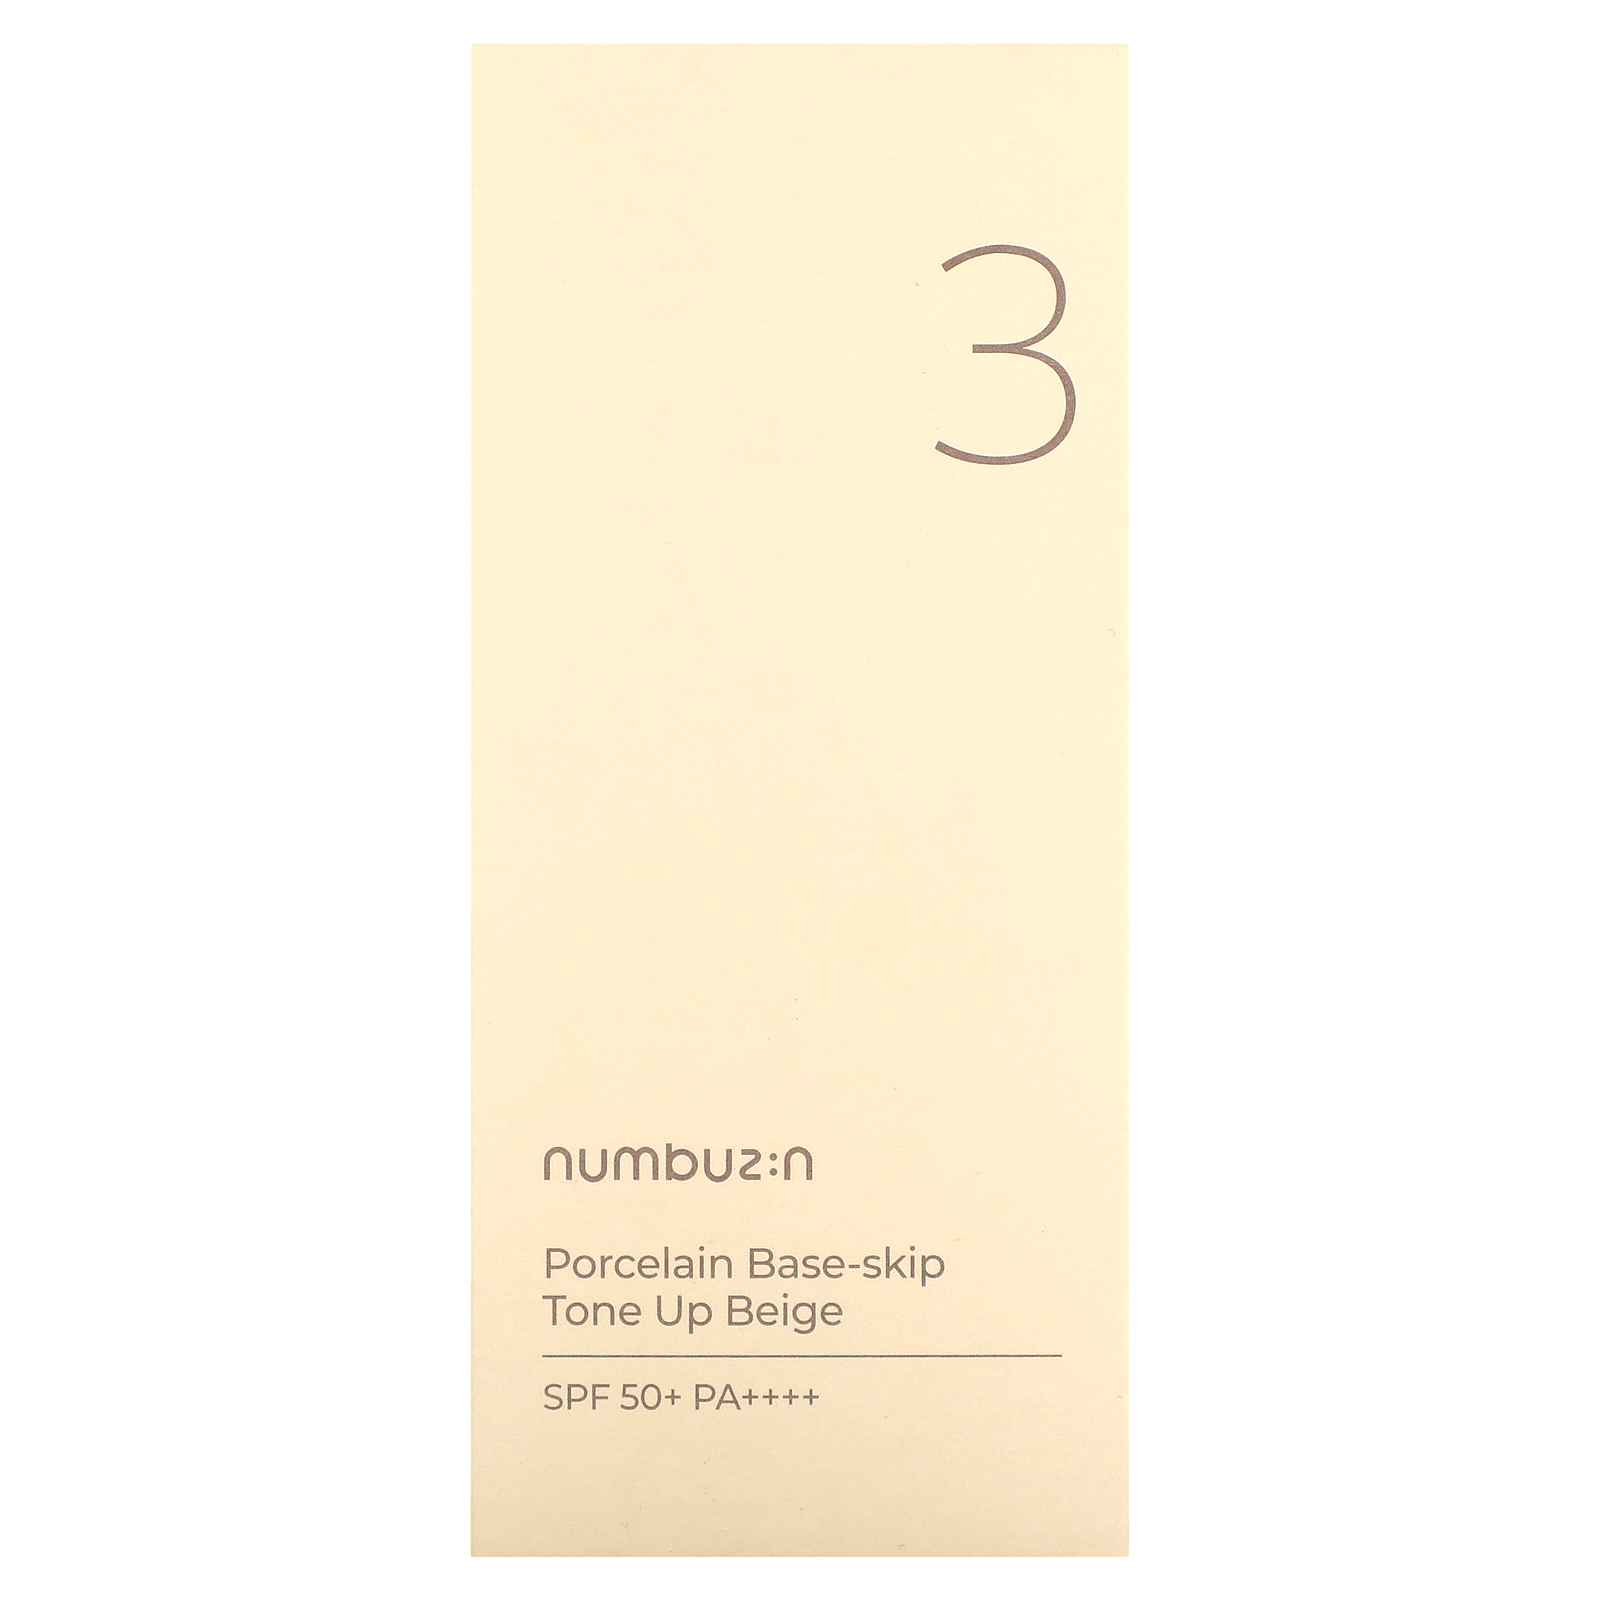 Numbuzin Porcelain Base-Skip, Tone Up Beige, SPF 50+ PA++++, No. 3, 1.69 fl oz (50 ml) - image 2 of 2